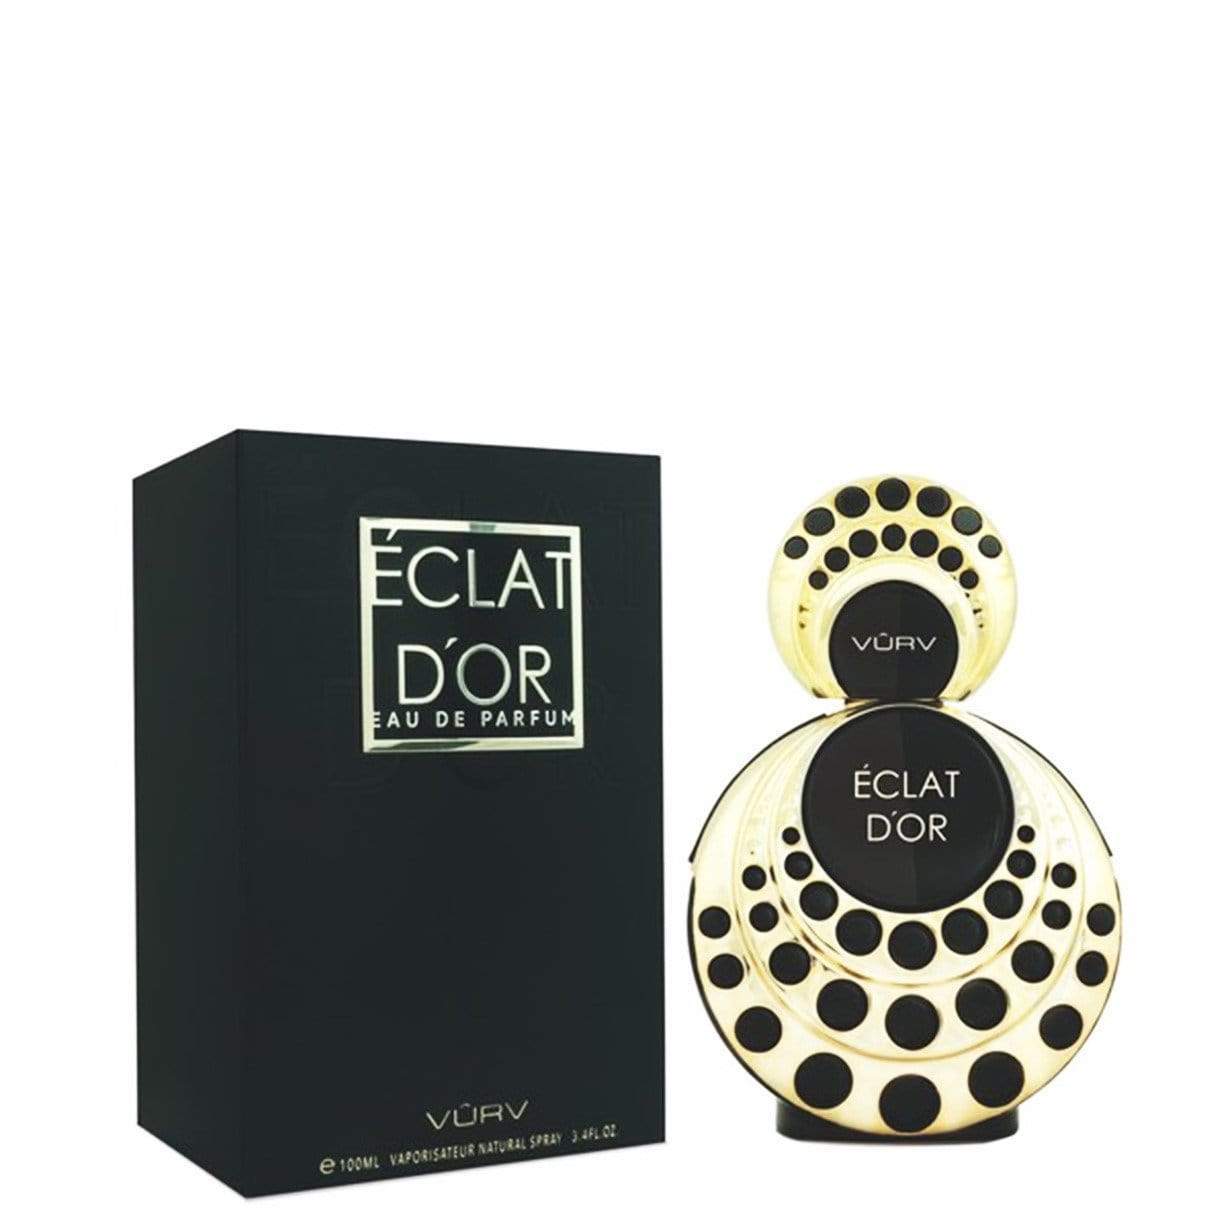 100 ml Eau de Perfume Eclat D'Or para fragancia amaderada de almendras para mujeres para ocasiones románticas y apasionadas